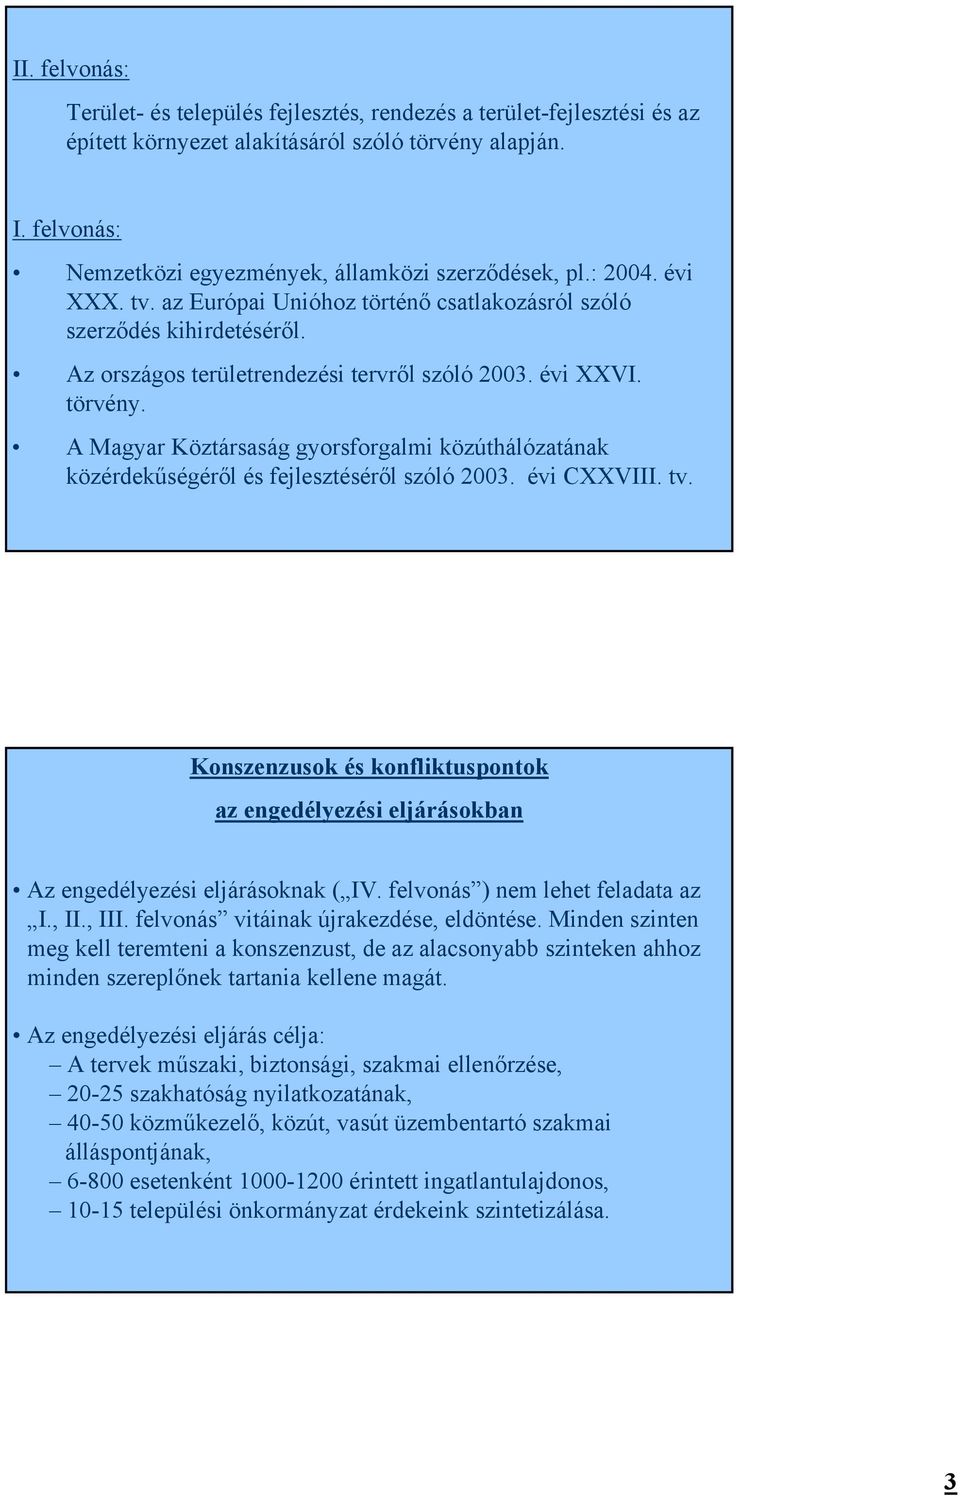 Az országos területrendezési tervről szóló 2003. évi XXVI. törvény. A Magyar Köztársaság gyorsforgalmi közúthálózatának közérdekűségéről és fejlesztéséről szóló 2003. évi CXXVIII. tv.